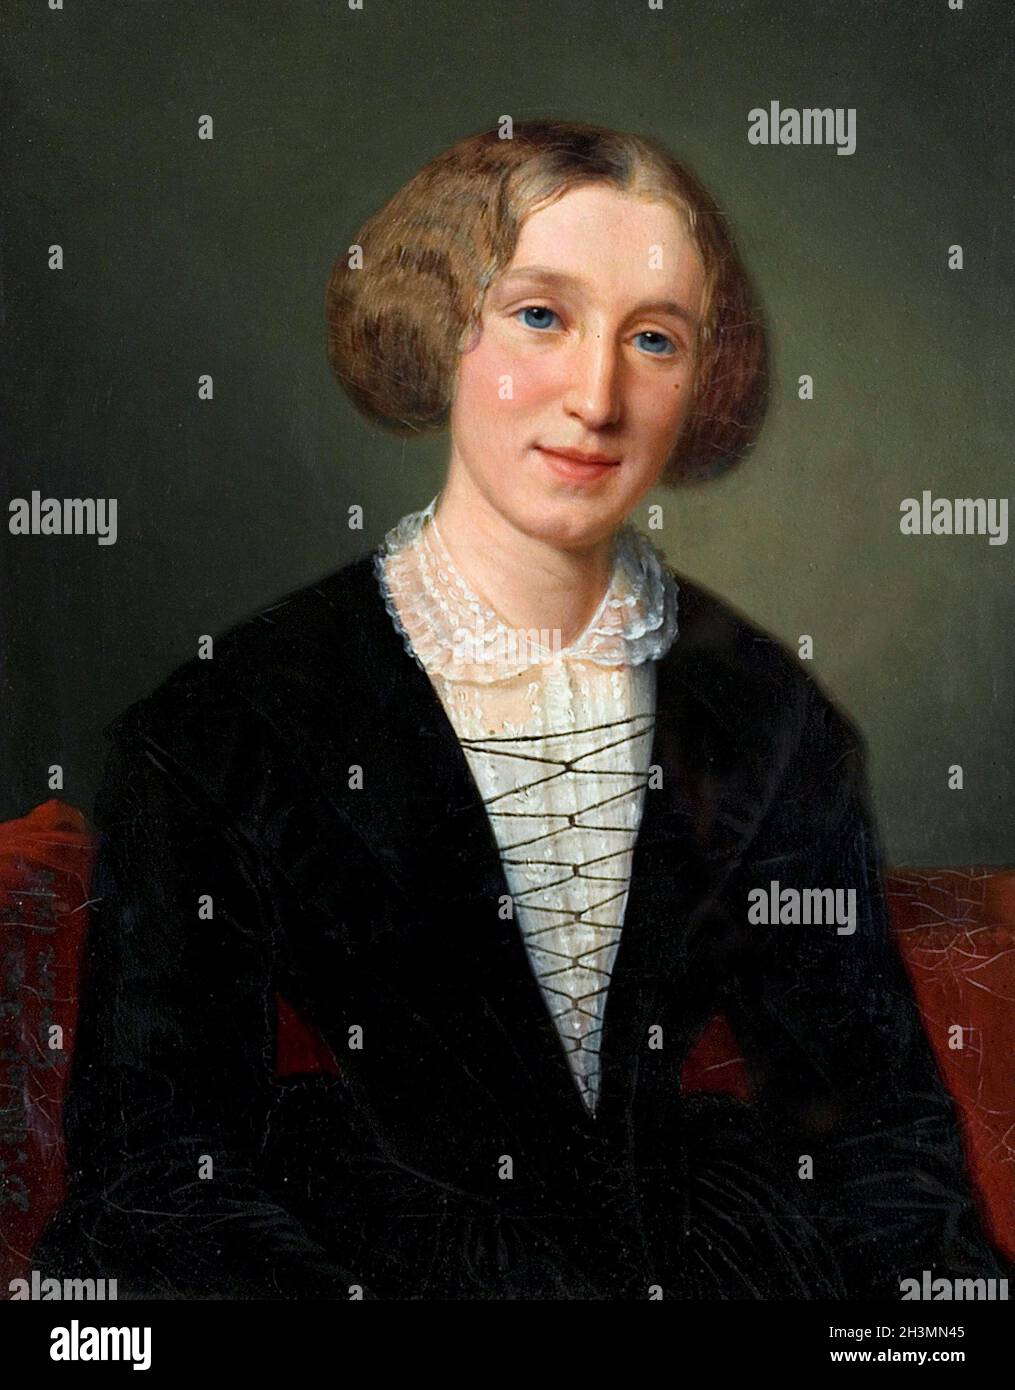 George Eliot (Mary Anne Evans - 1819-1880).Portrait du romancier anglais de François d’Albert Durade, huile sur toile, 1881 Banque D'Images